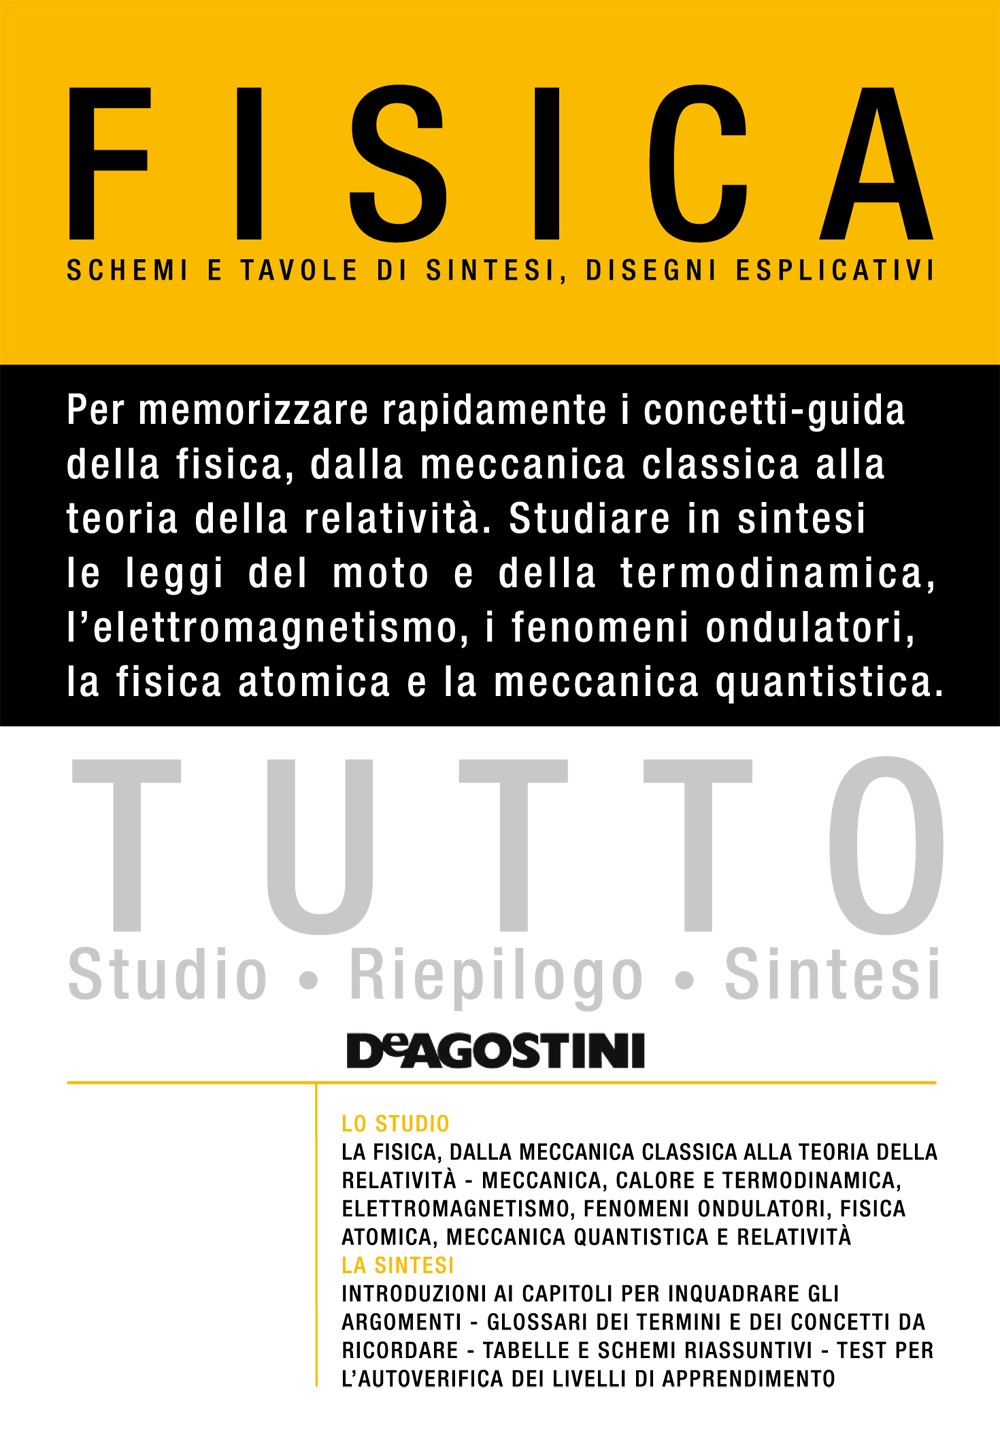 TUTTO - Fisica - Versione pdf